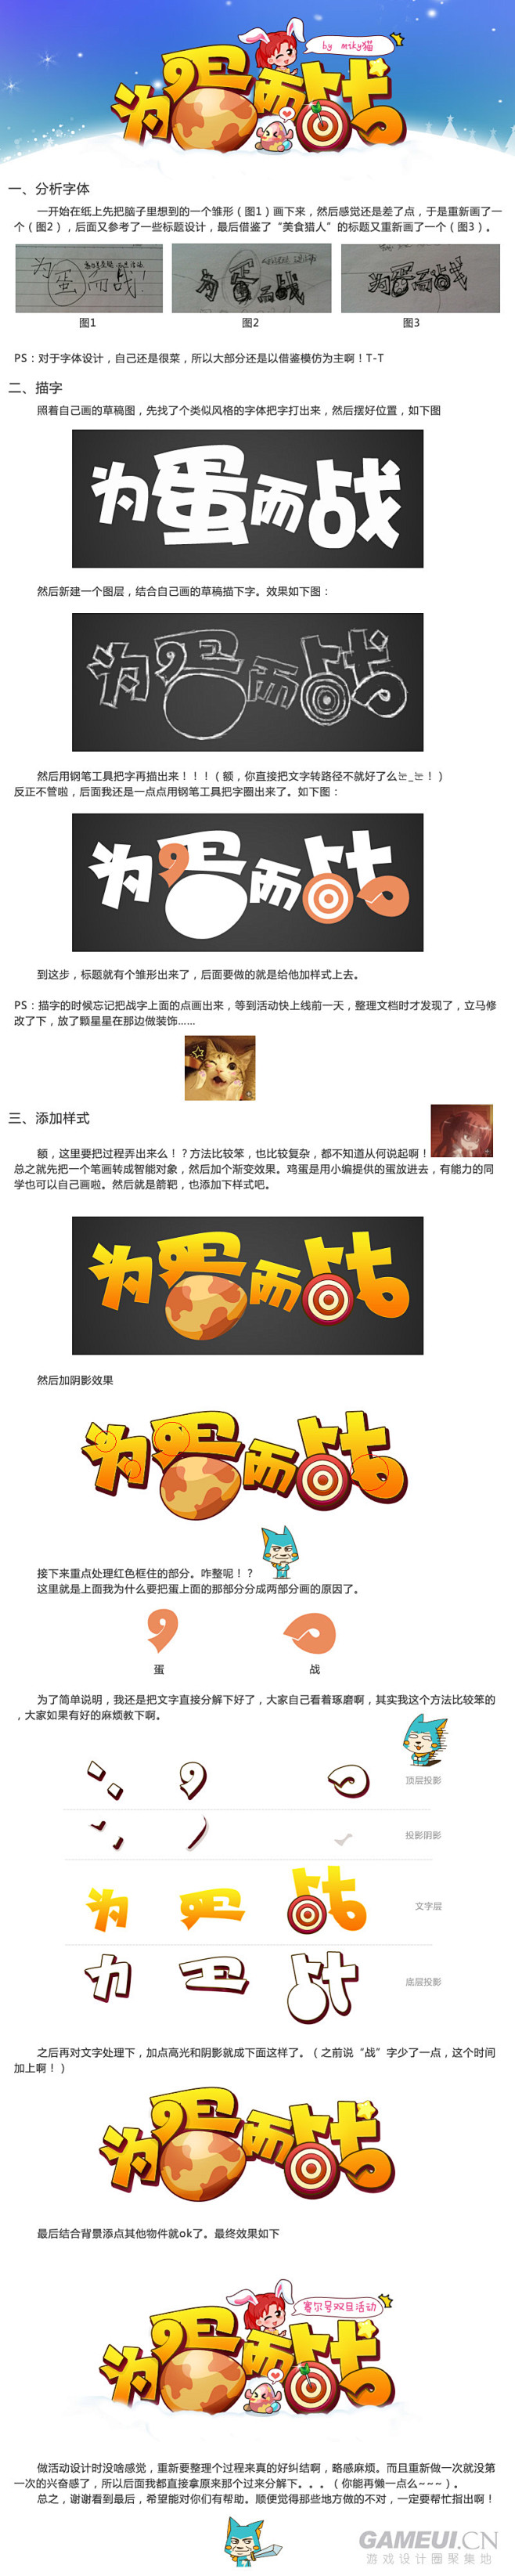 为蛋而战 字体设计过程 by miky猫...